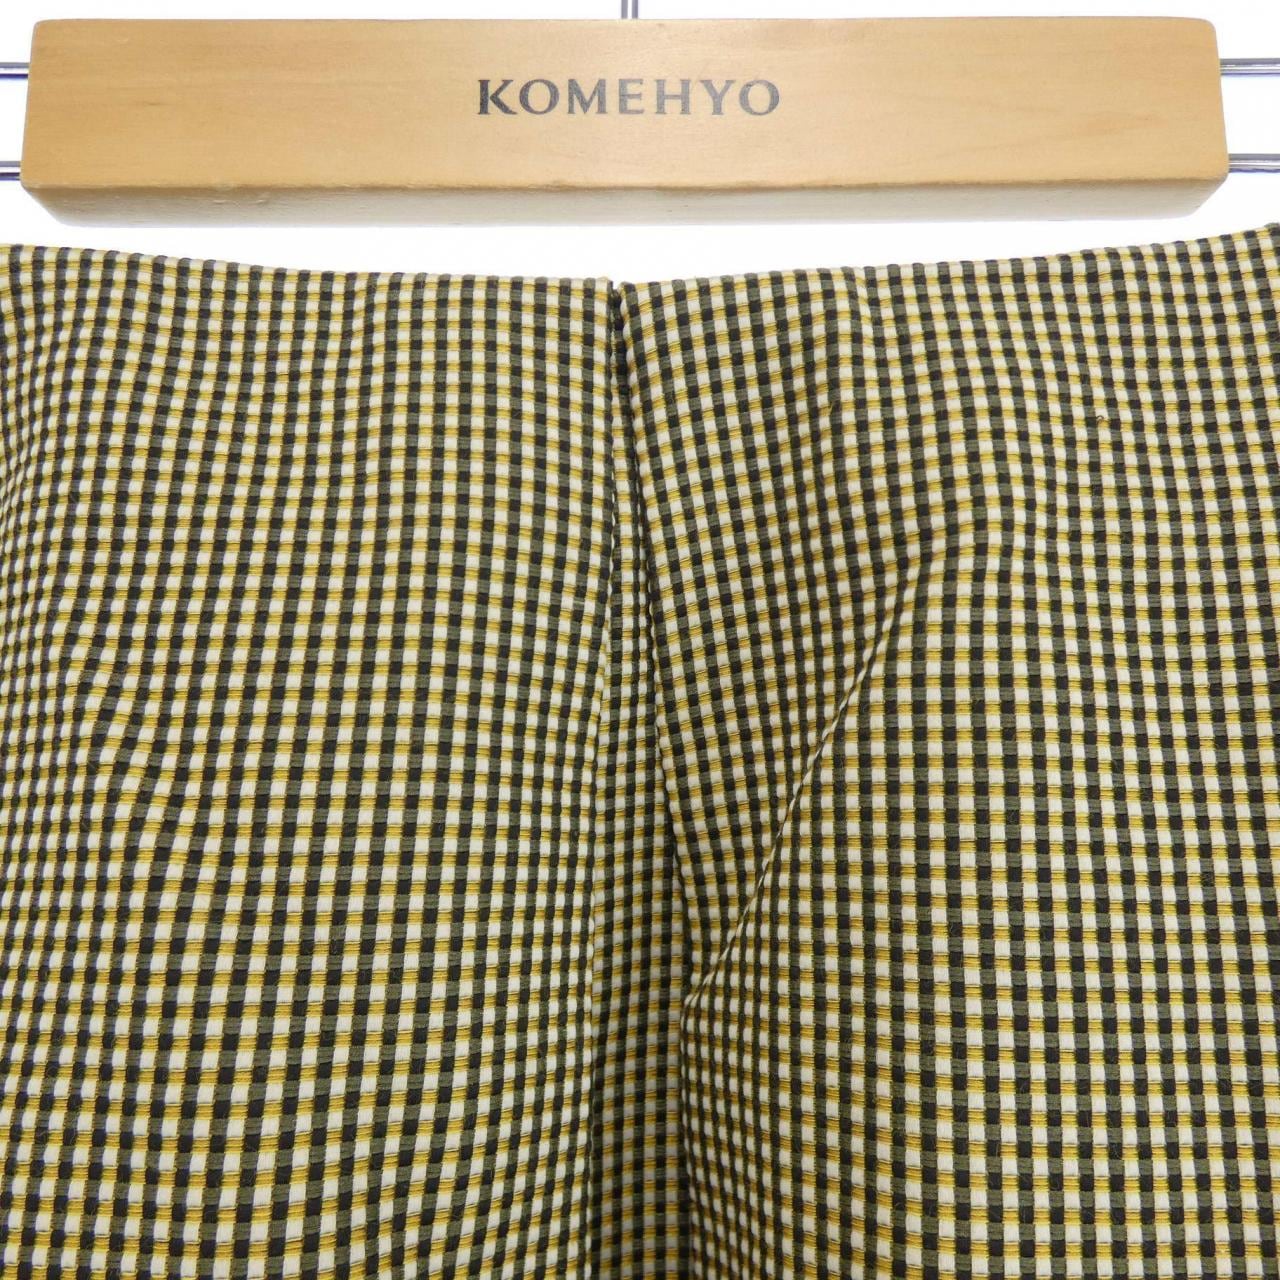 Rene RENE skirt